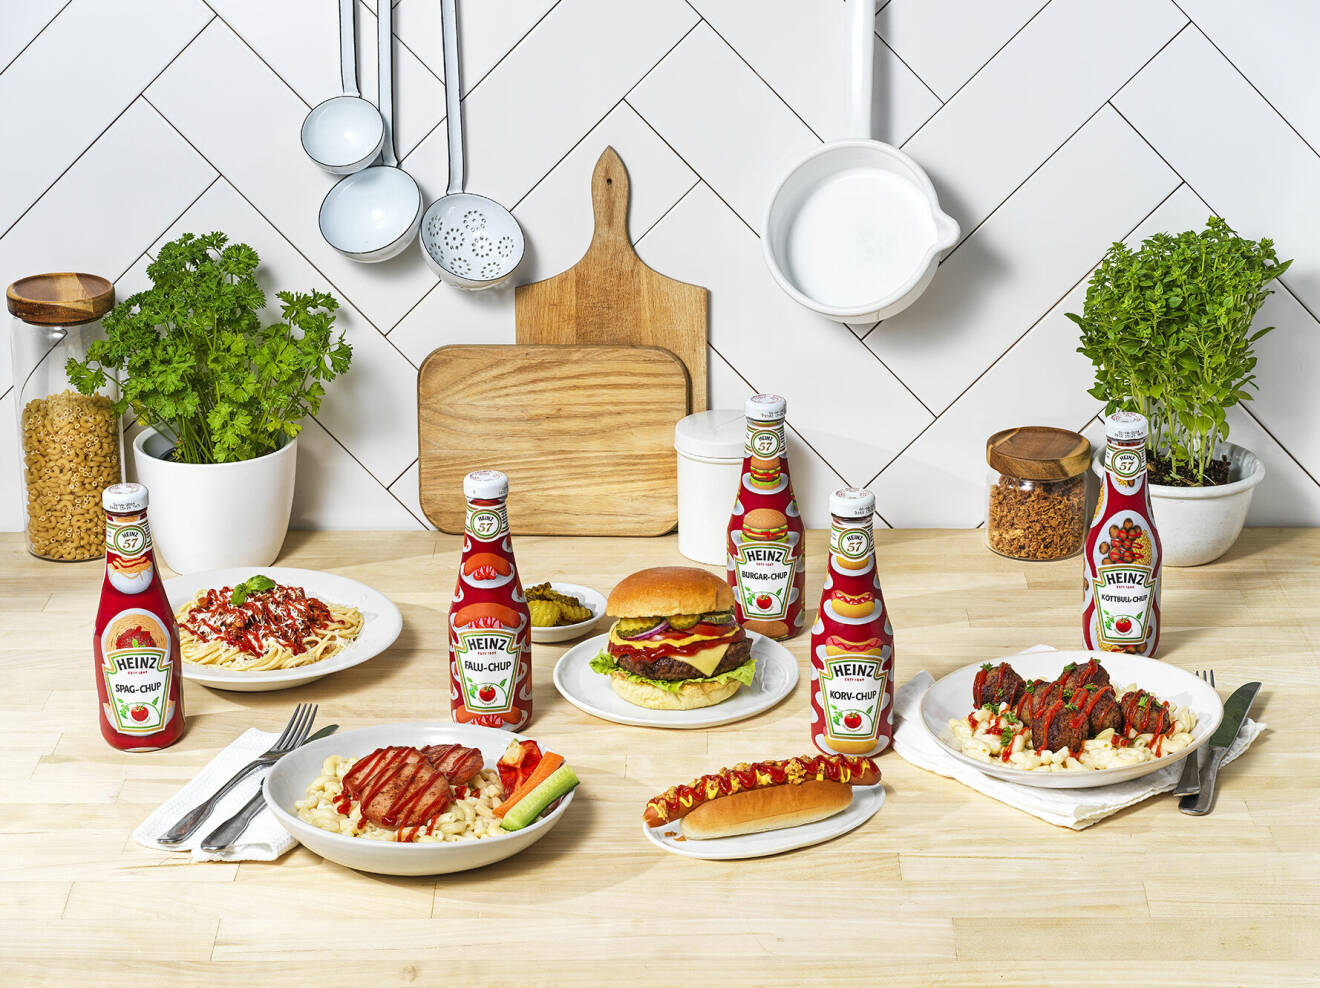 Med tanke på hur mycket ketchup vi äter i Sverige så får man nog vara snabb om man vill knipa sig en limited edition-flaska.